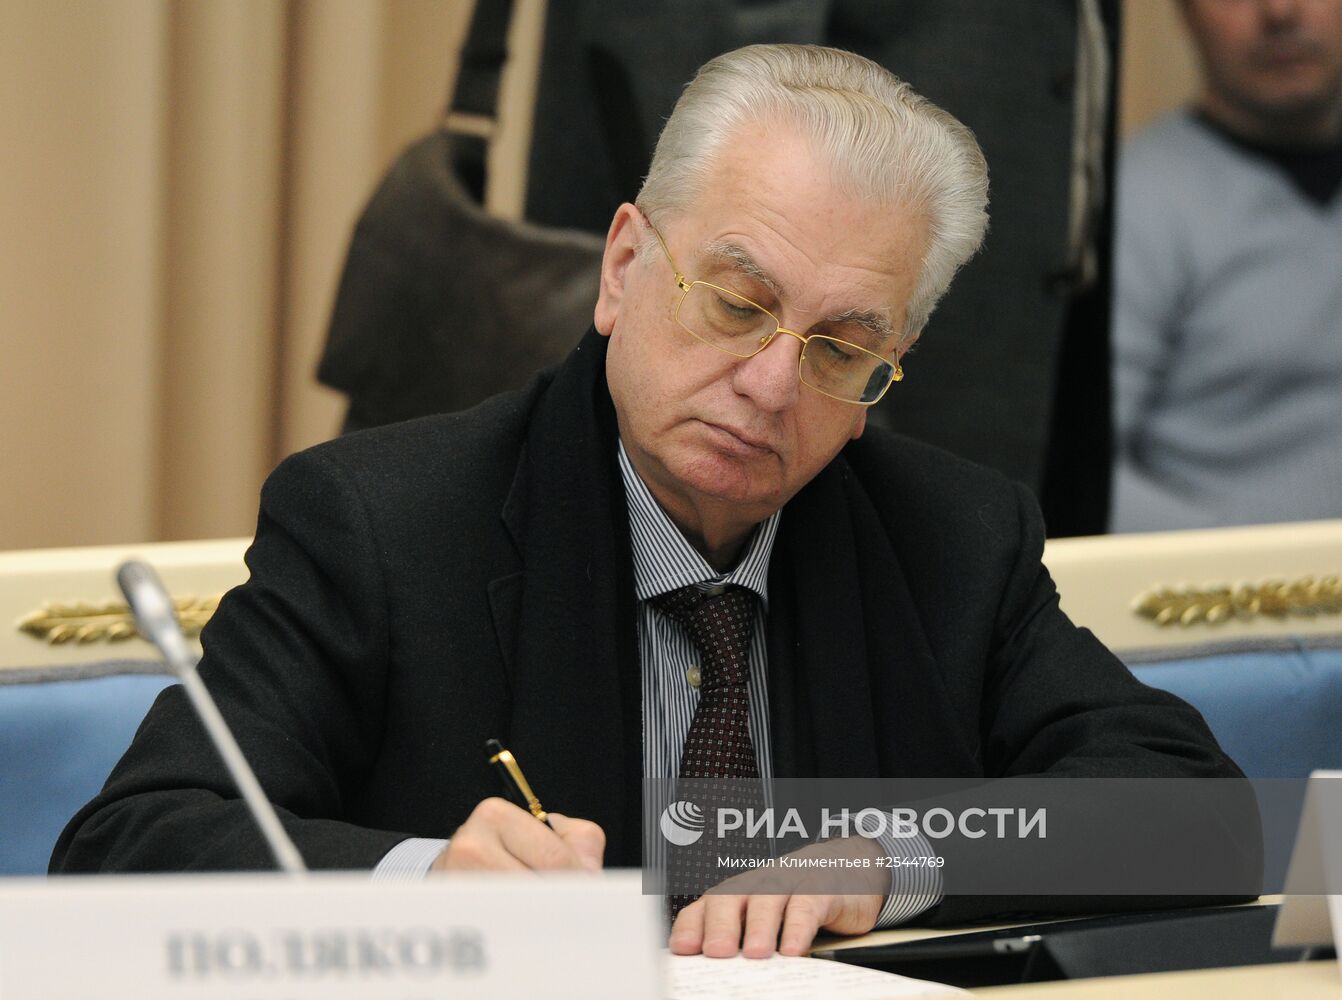 С.Иванов провел заседание по разработке проекта культурной политики